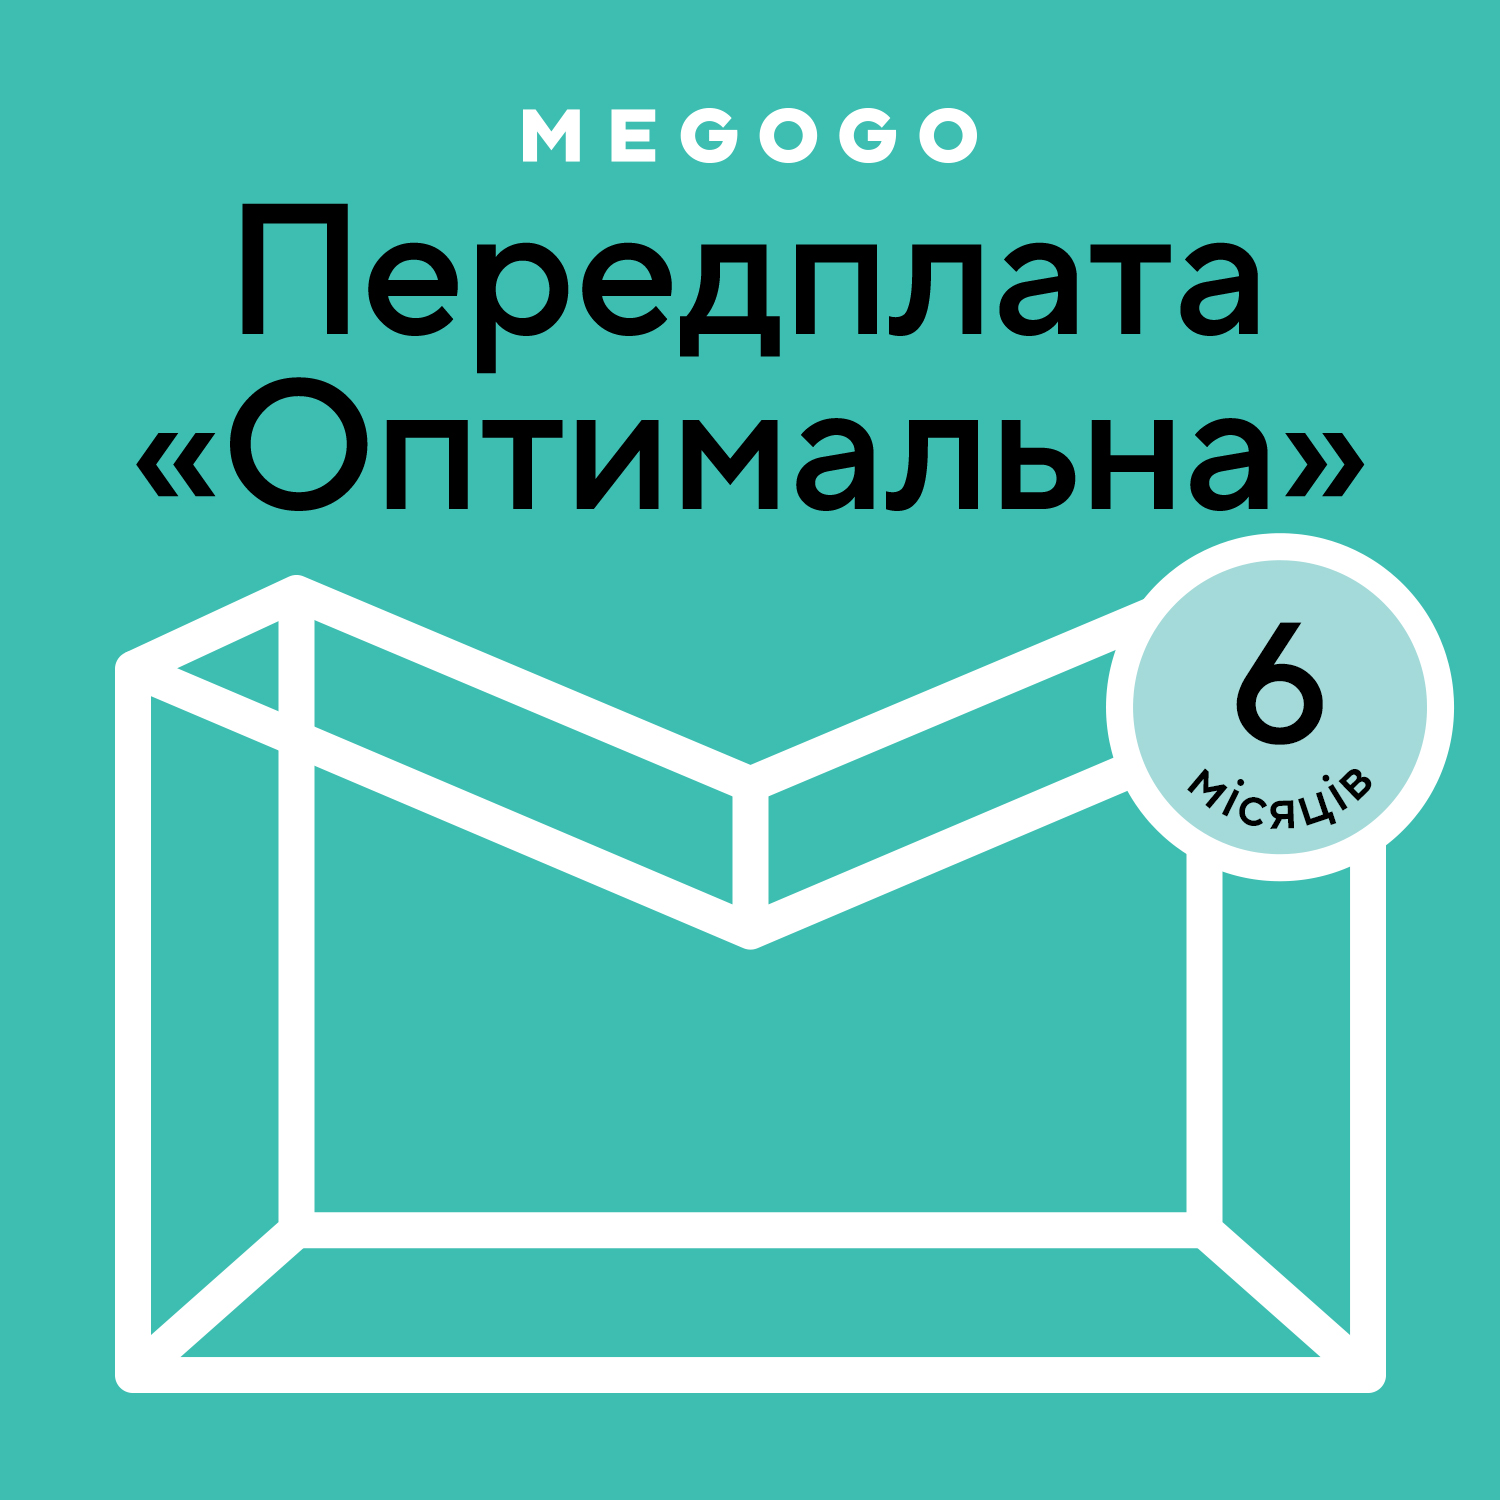 MEGOGO «Кино и ТВ: Оптимальная» 6 мес в Киеве